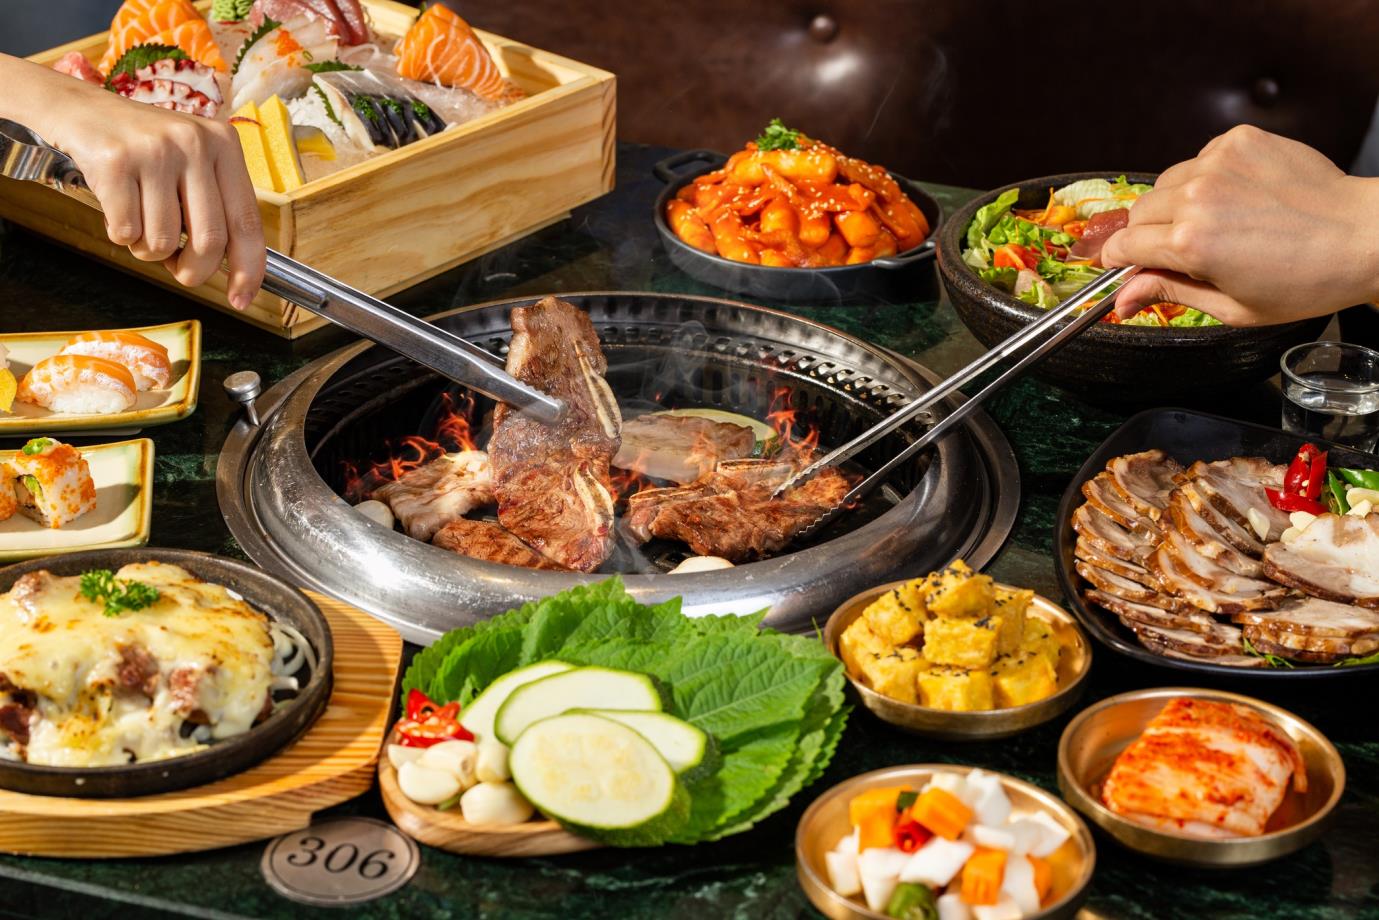 Theo chân giới trẻ khám phá nhà hàng Buffet thịt nướng Hàn Quốc hàng đầu tại Hà Nội cho dịp Giáng sinh năm nay - Ảnh 2.